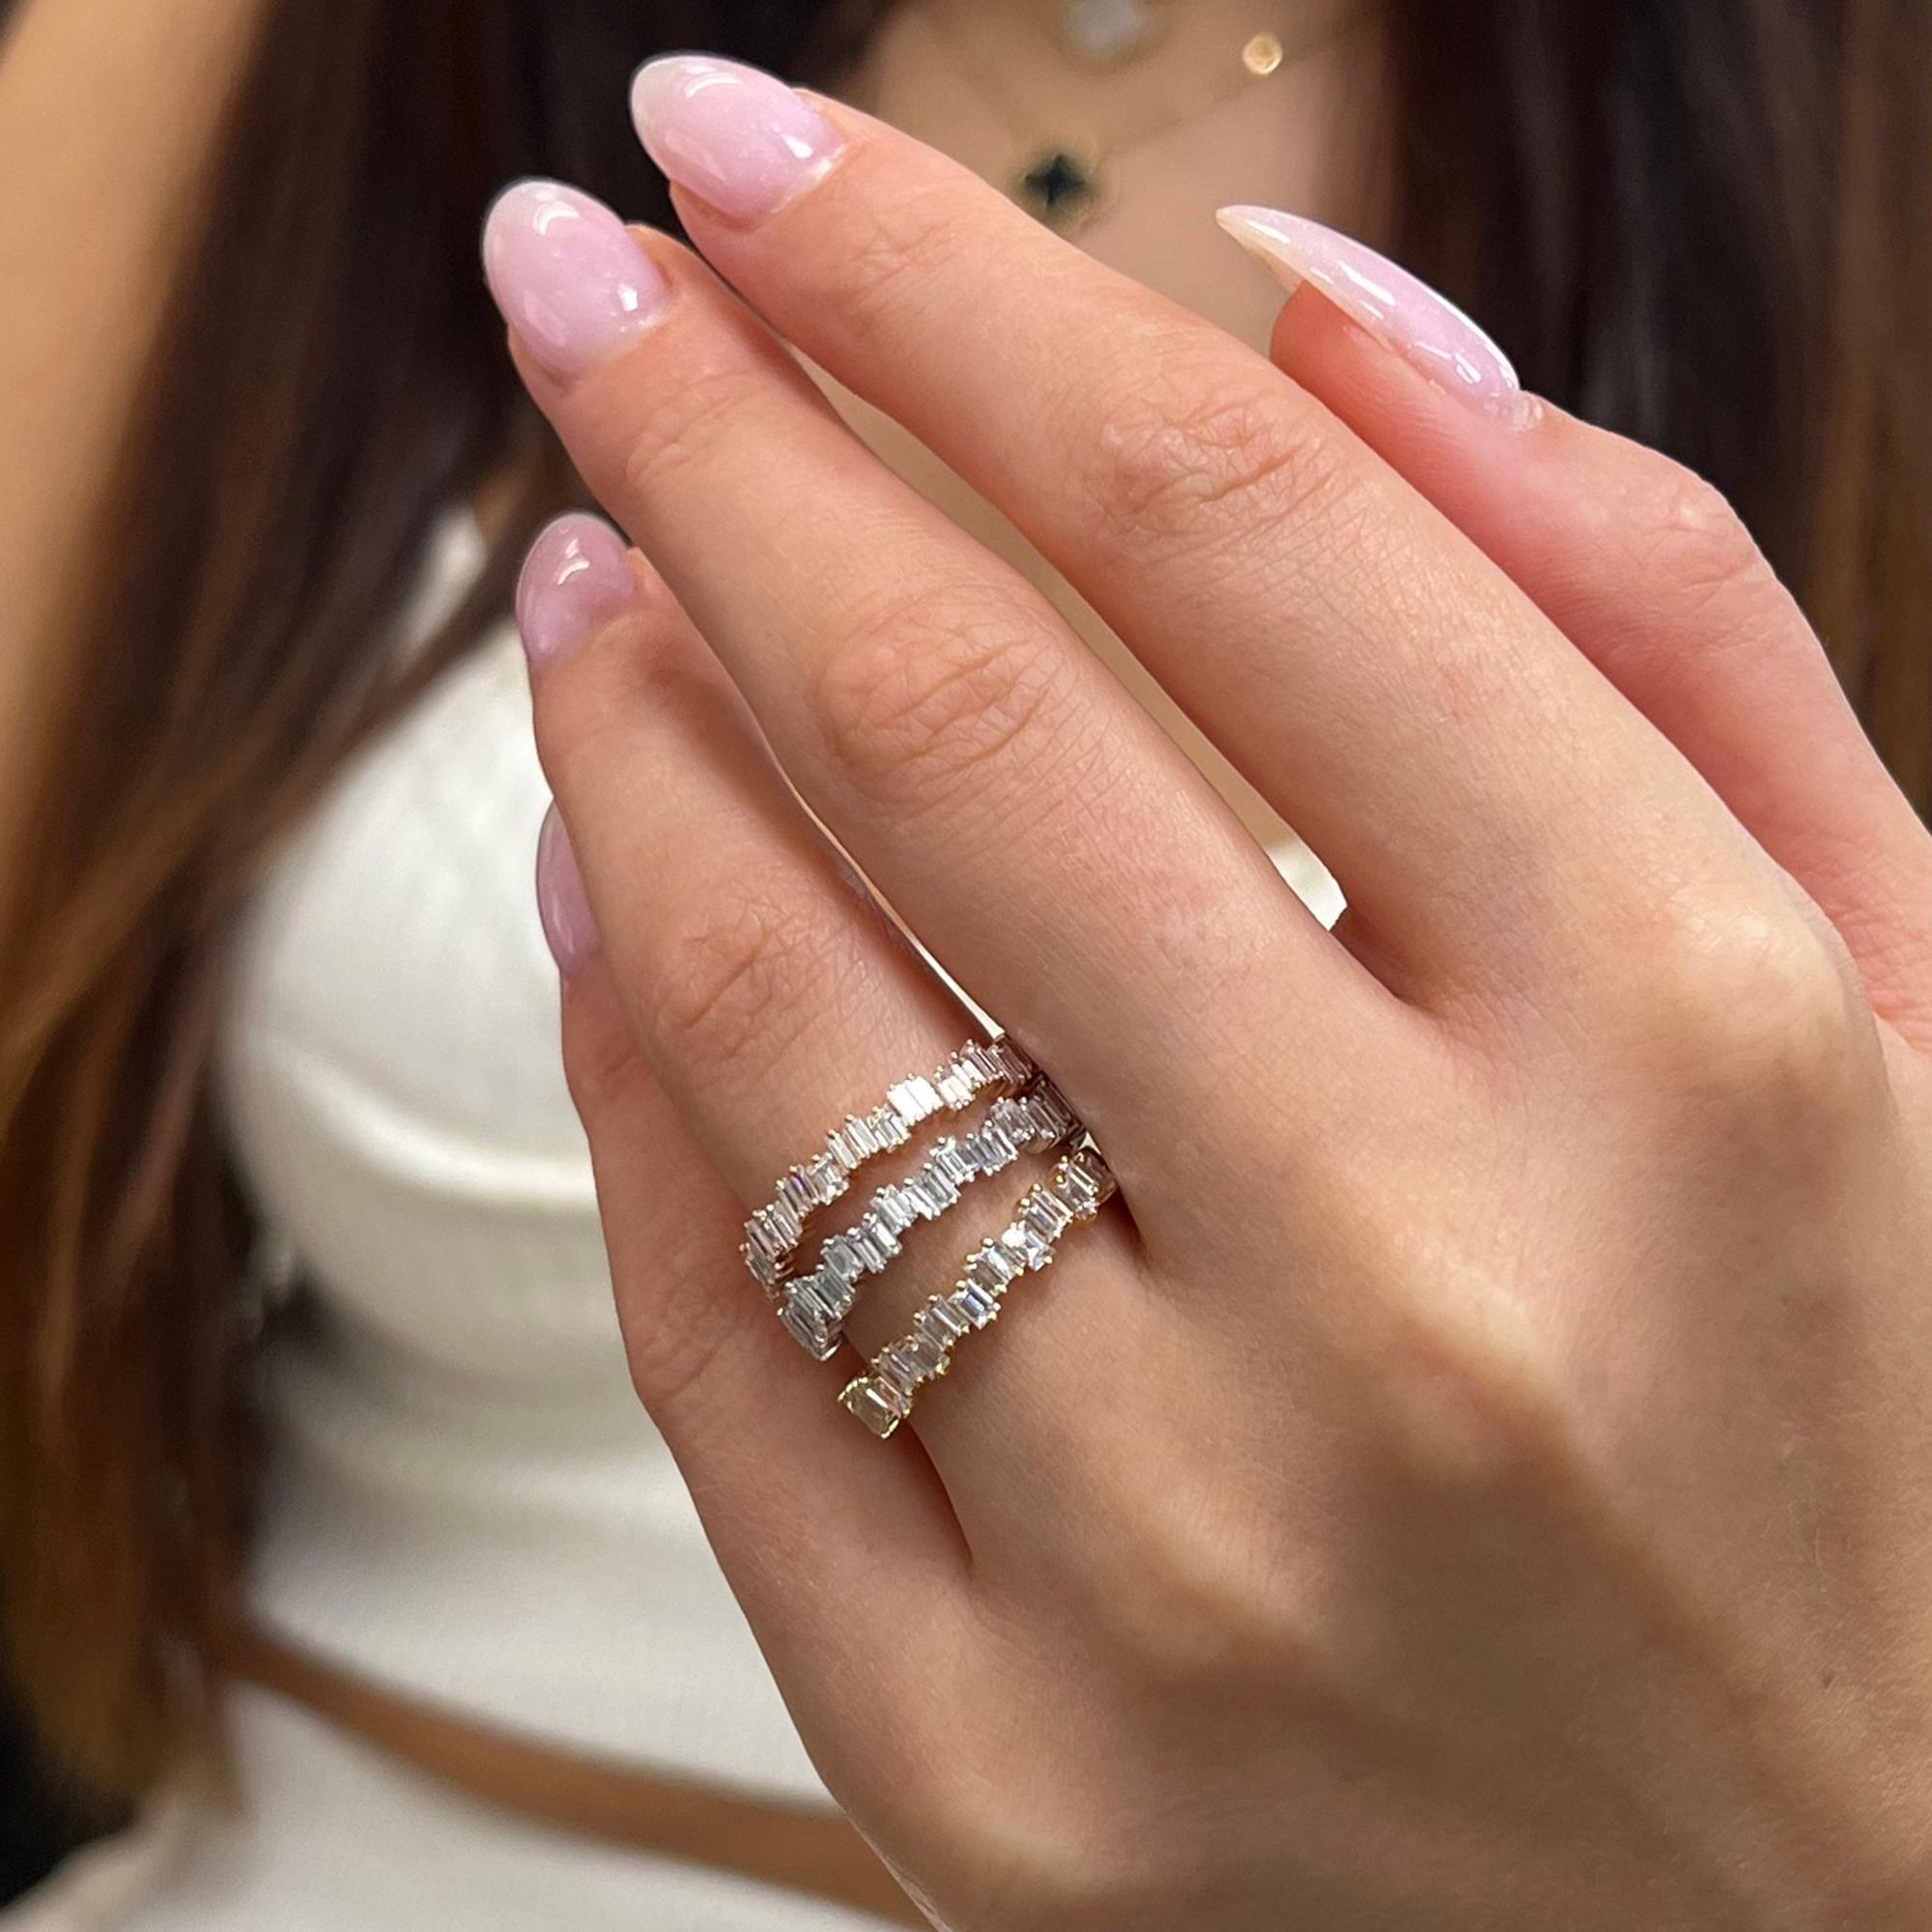 Rachel Koen 0.63Cttw Baguette Cut Diamond Ring 18K White Gold For Sale 1